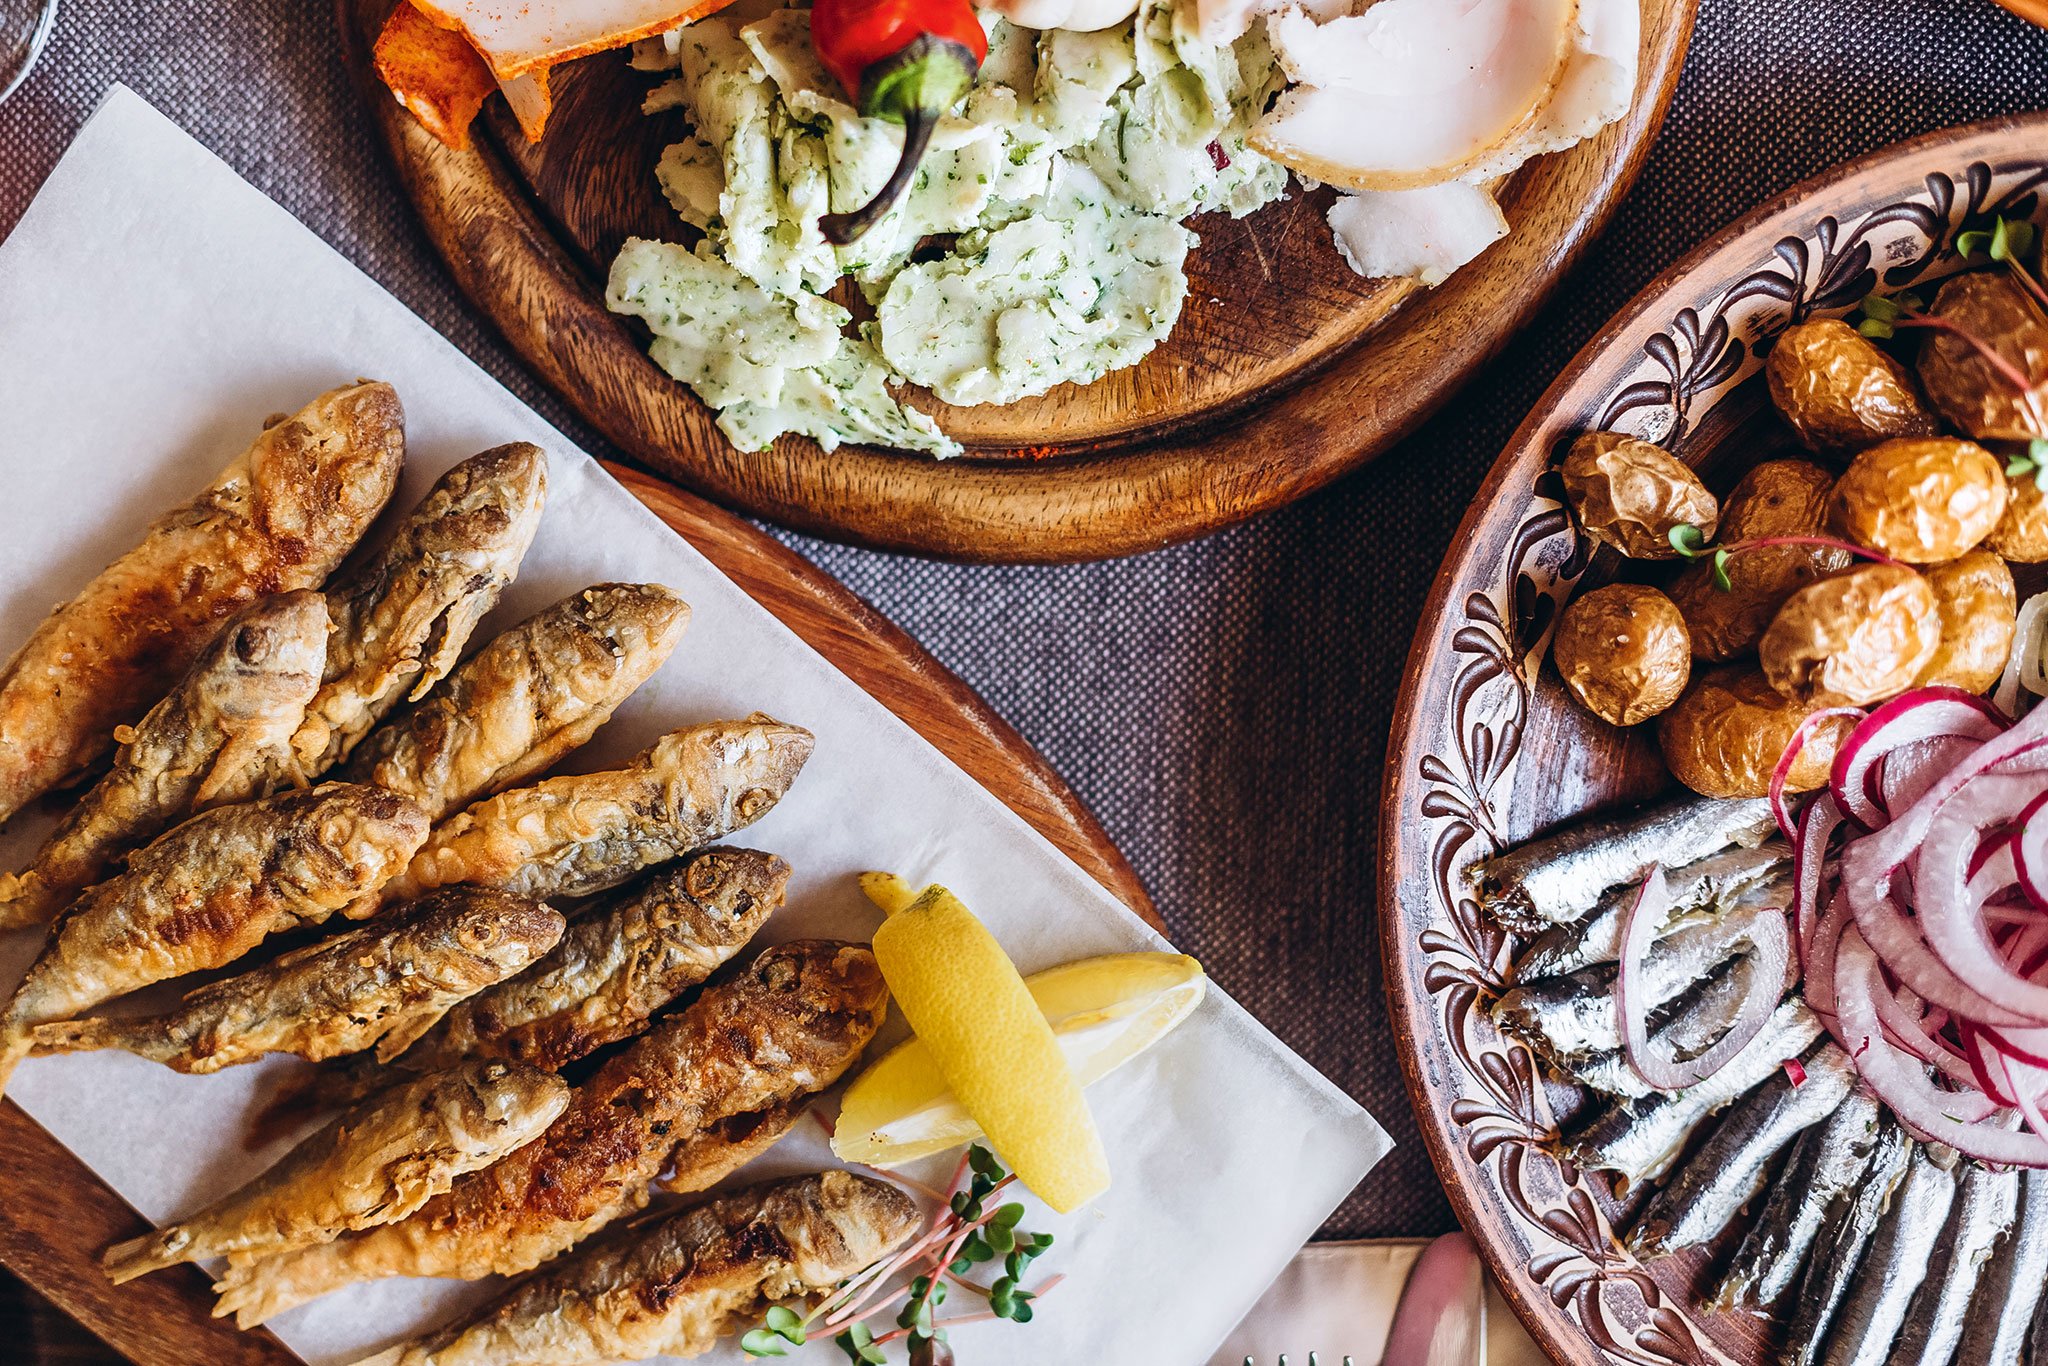 In Olivenöl frittierter Fisch ist fester Bestandteil der andalusischen Küche.